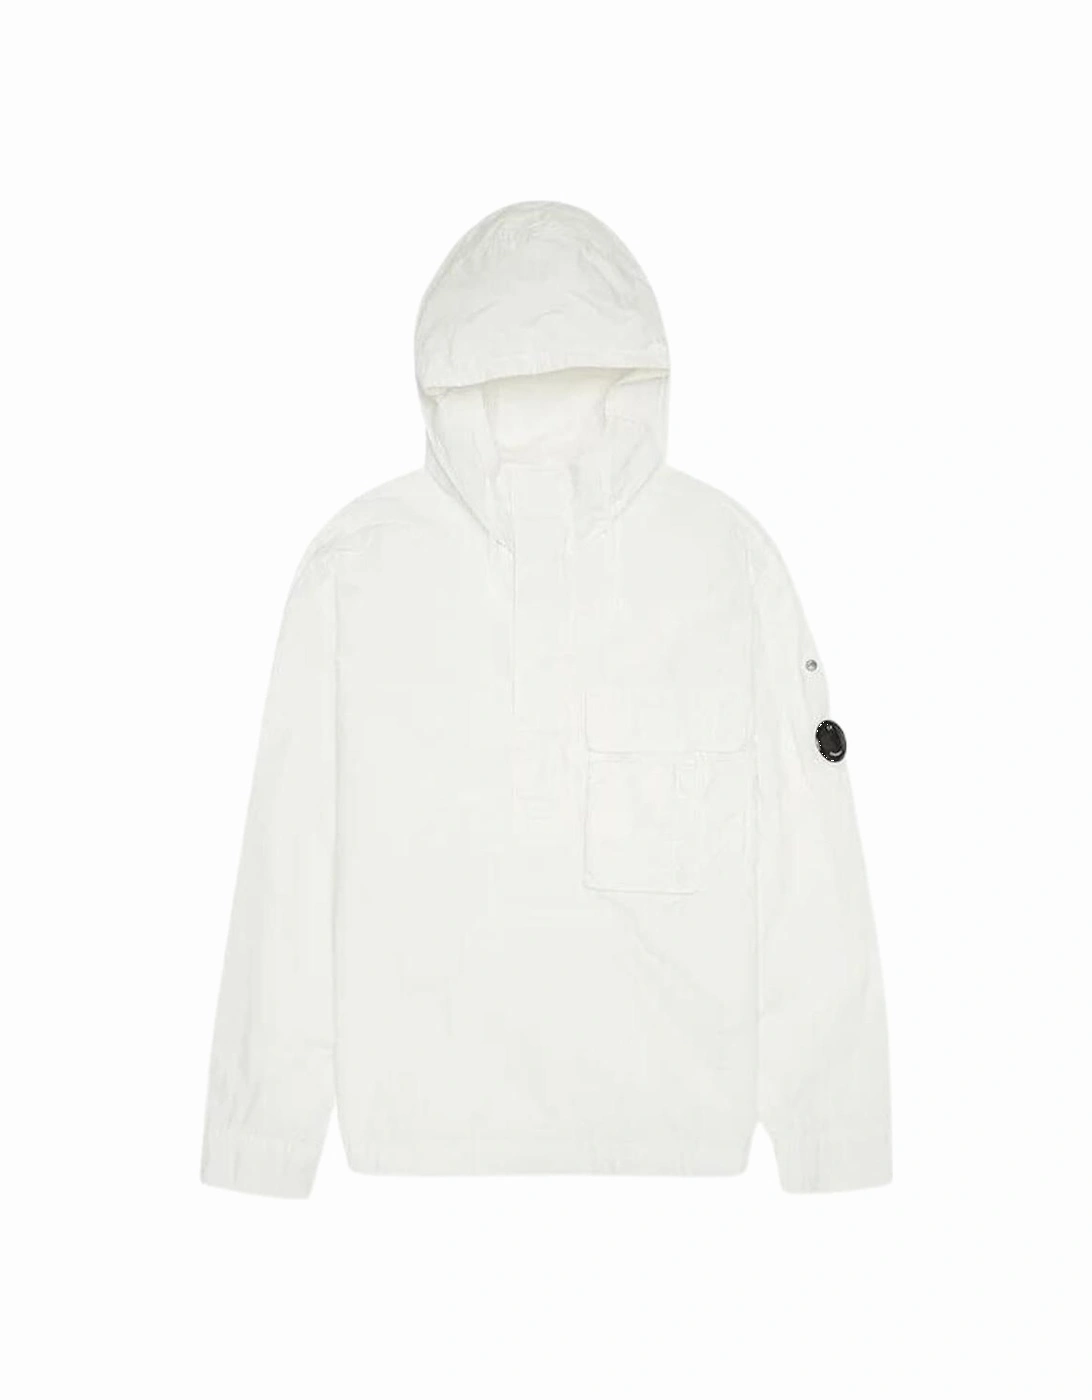 C.P. Company Flat Nylon White Overshirt Jacket, 3 of 2